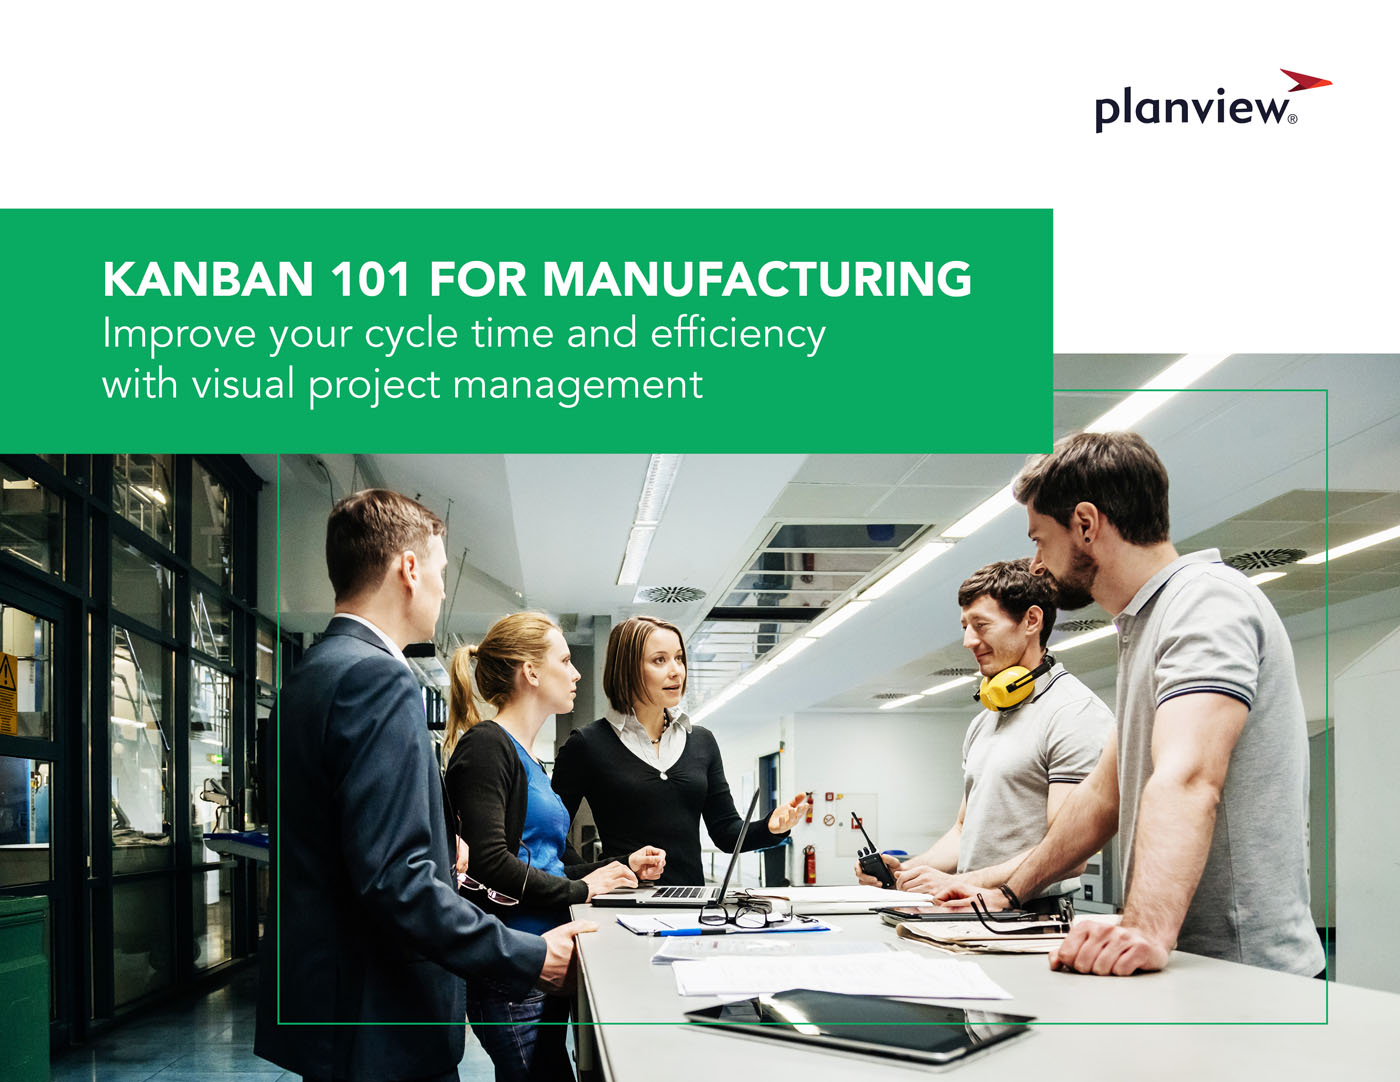 Kanban 101 for Manufacturing